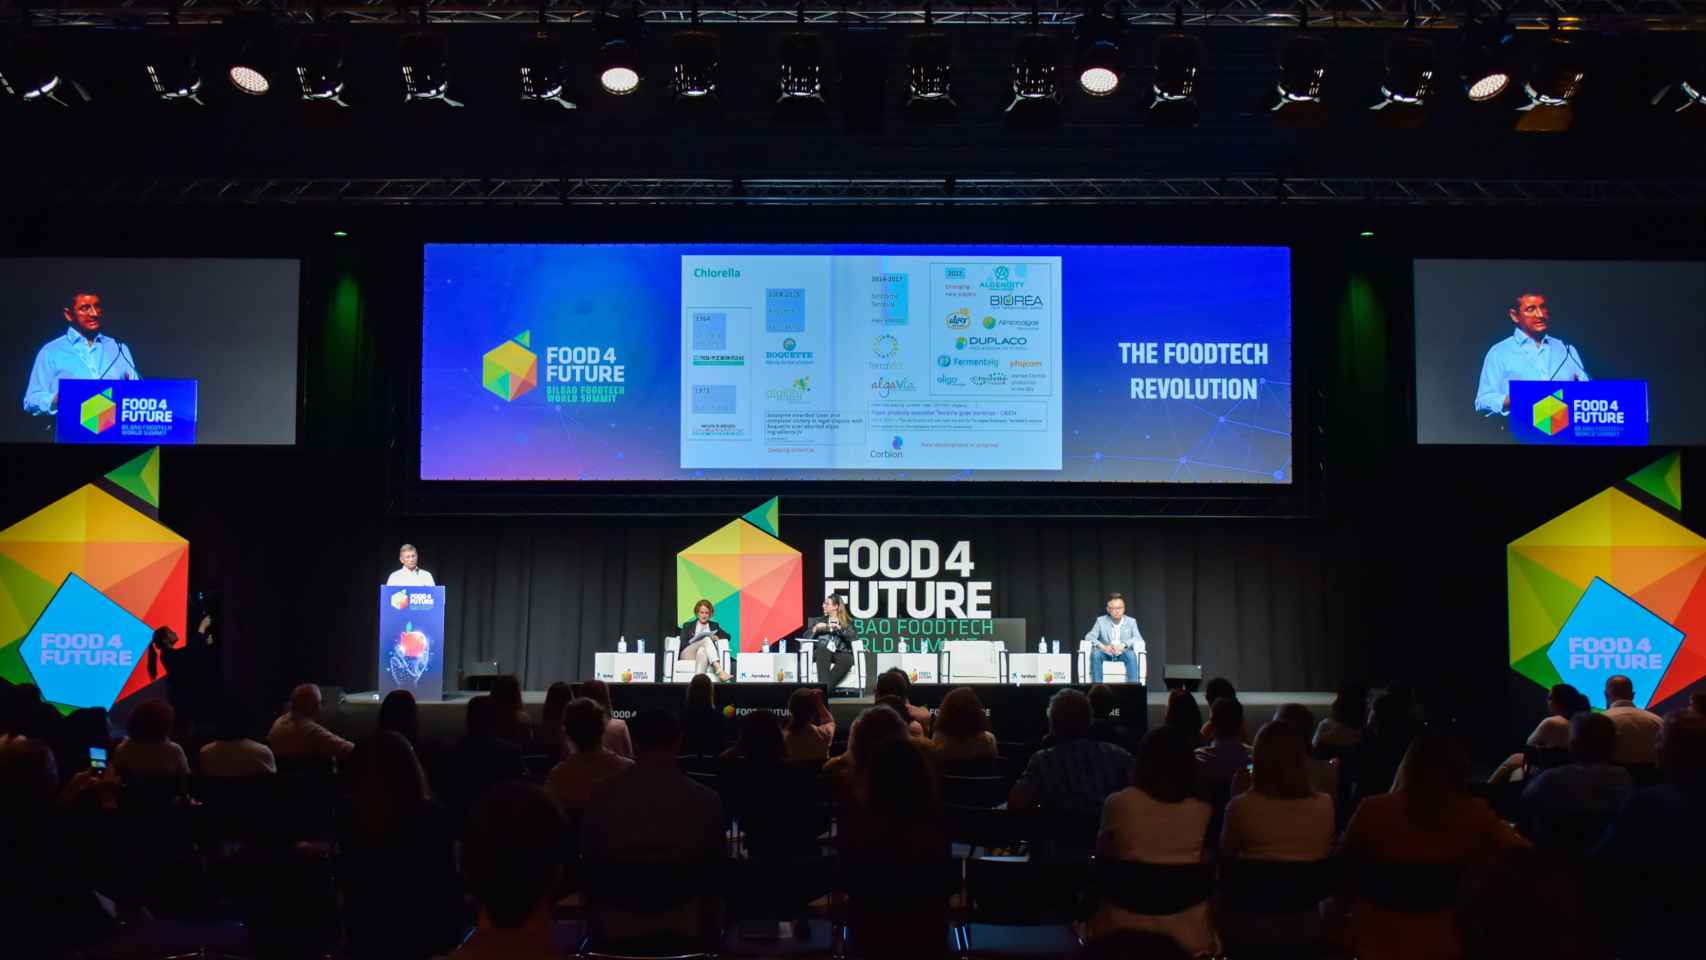 La tercera edición del congreso Food 4 Future World Summit reunirá a más de 450 expertos nacionales e internacionales.